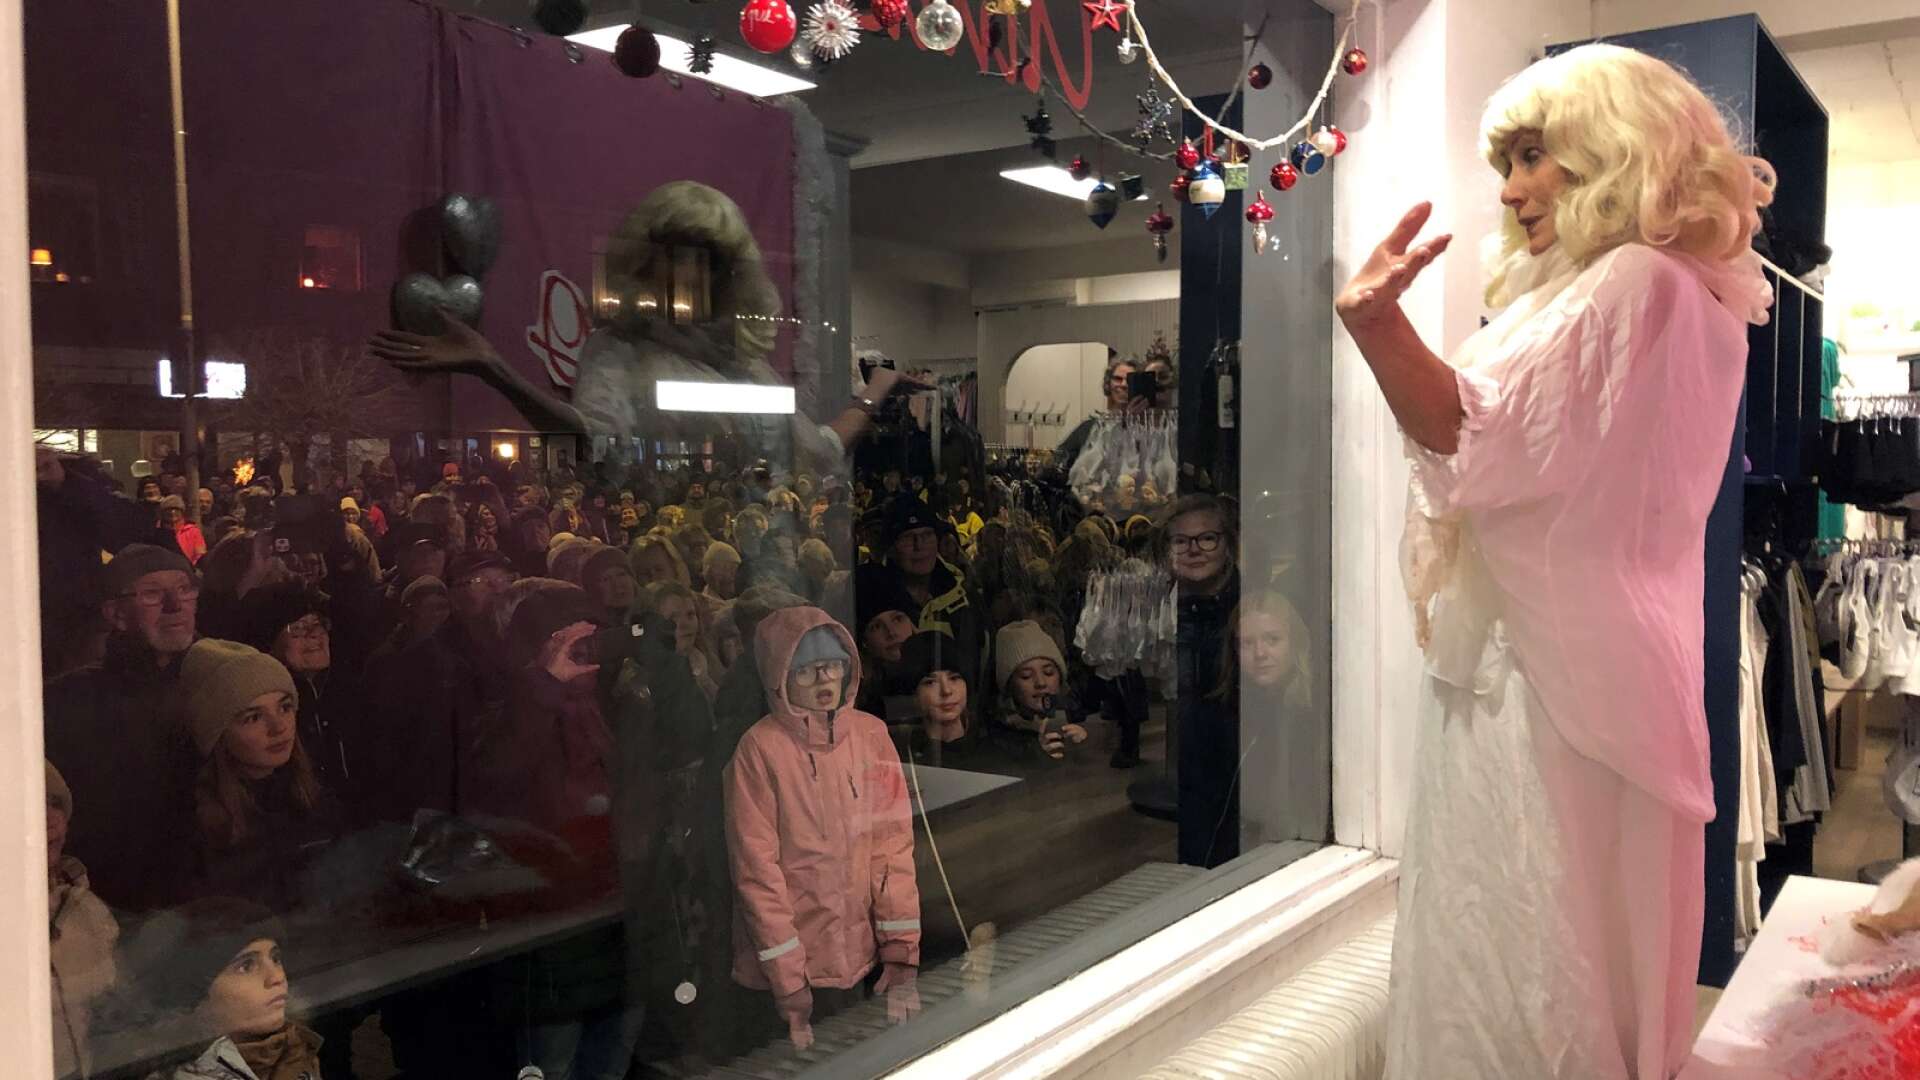 Många nyfikna åskådare samlades framför Ainas skyltfönster för att se årets show som hade ”Wahlgren-familjen” som tema.